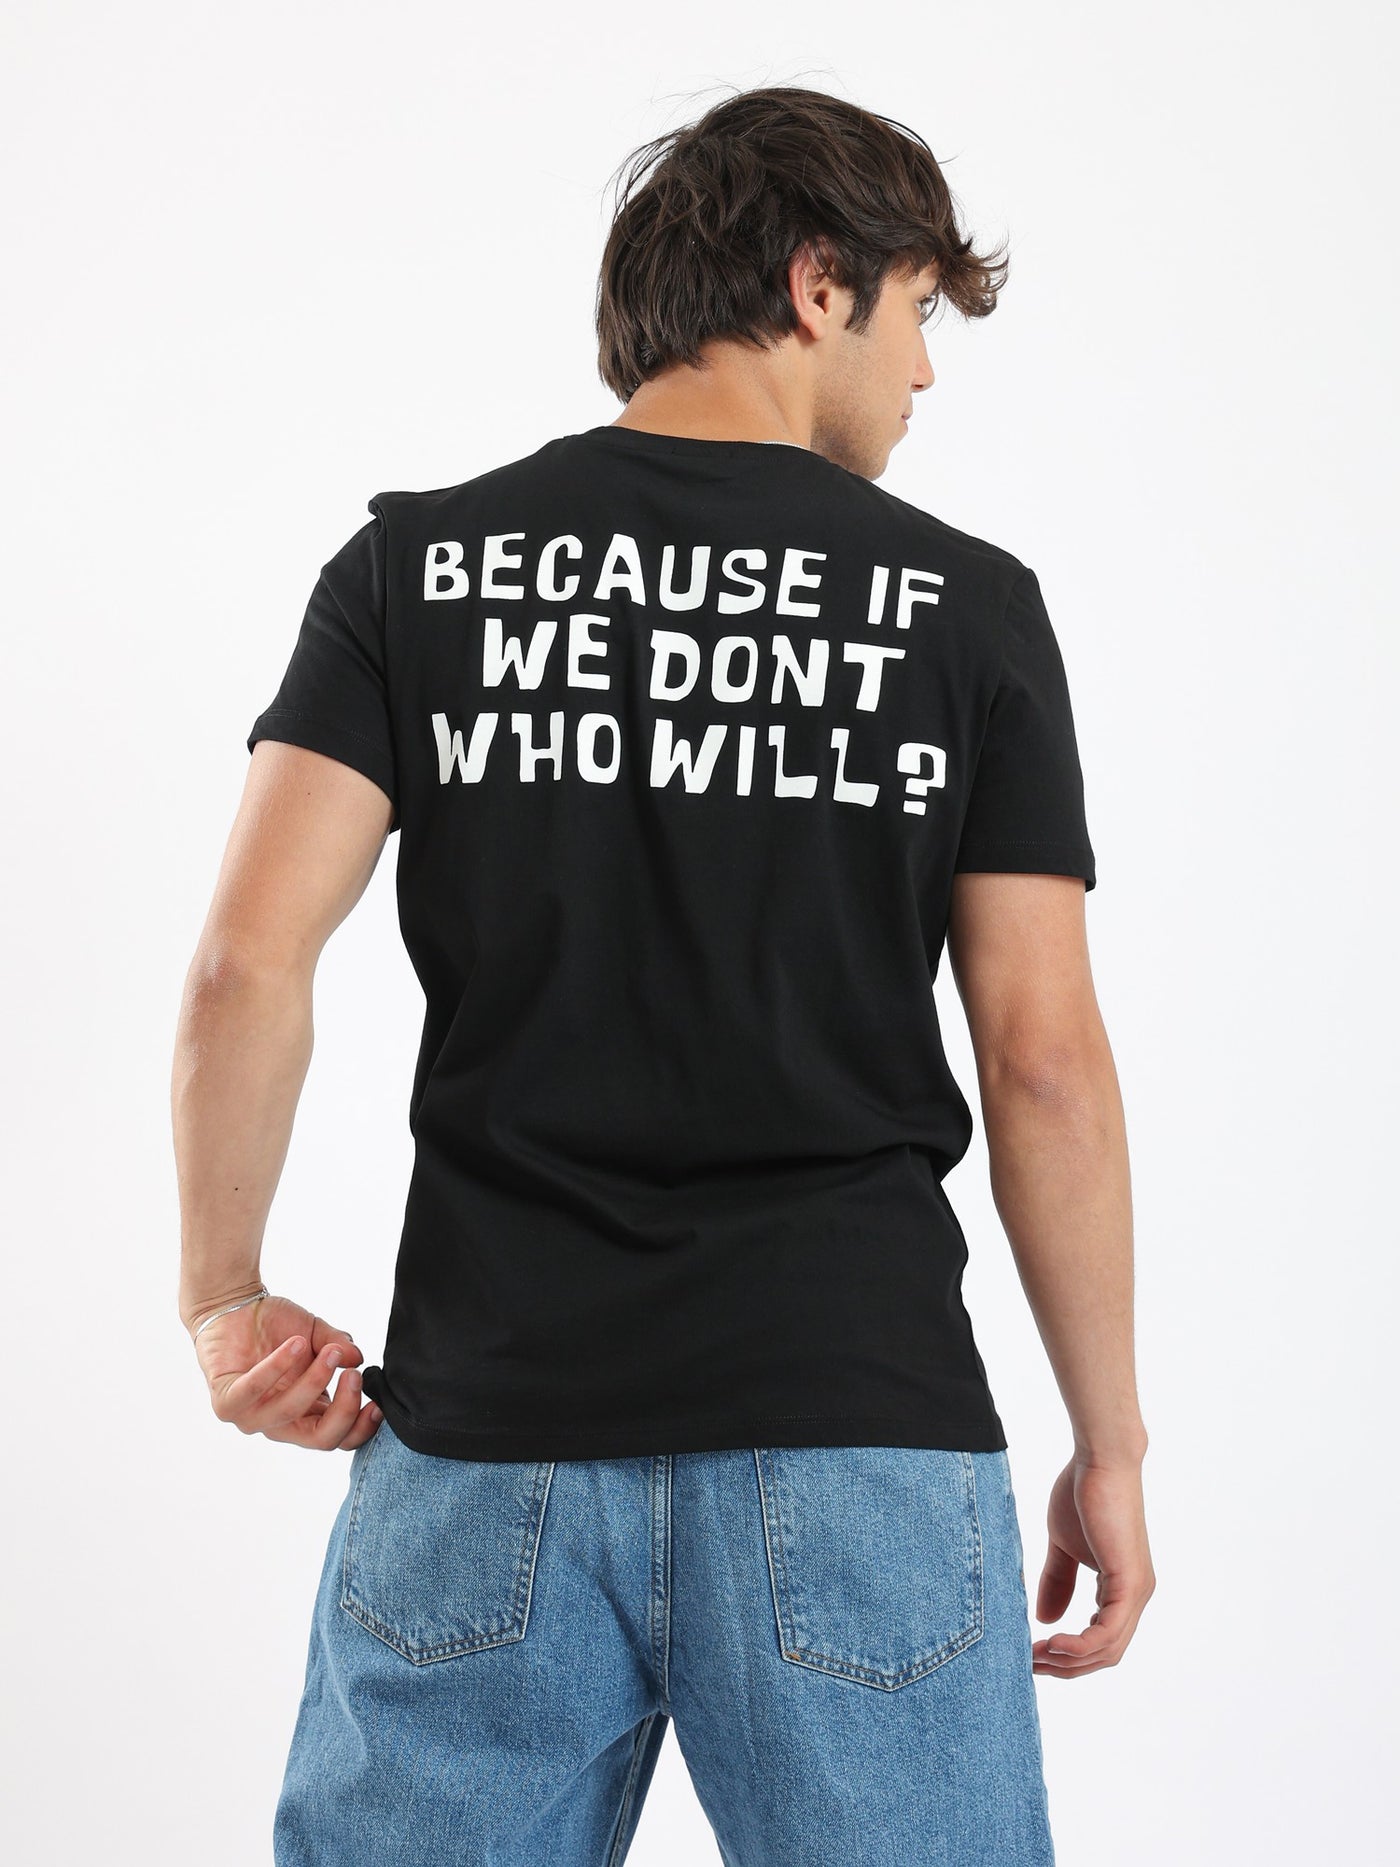 T-Shirt - Slip-on - Back Print